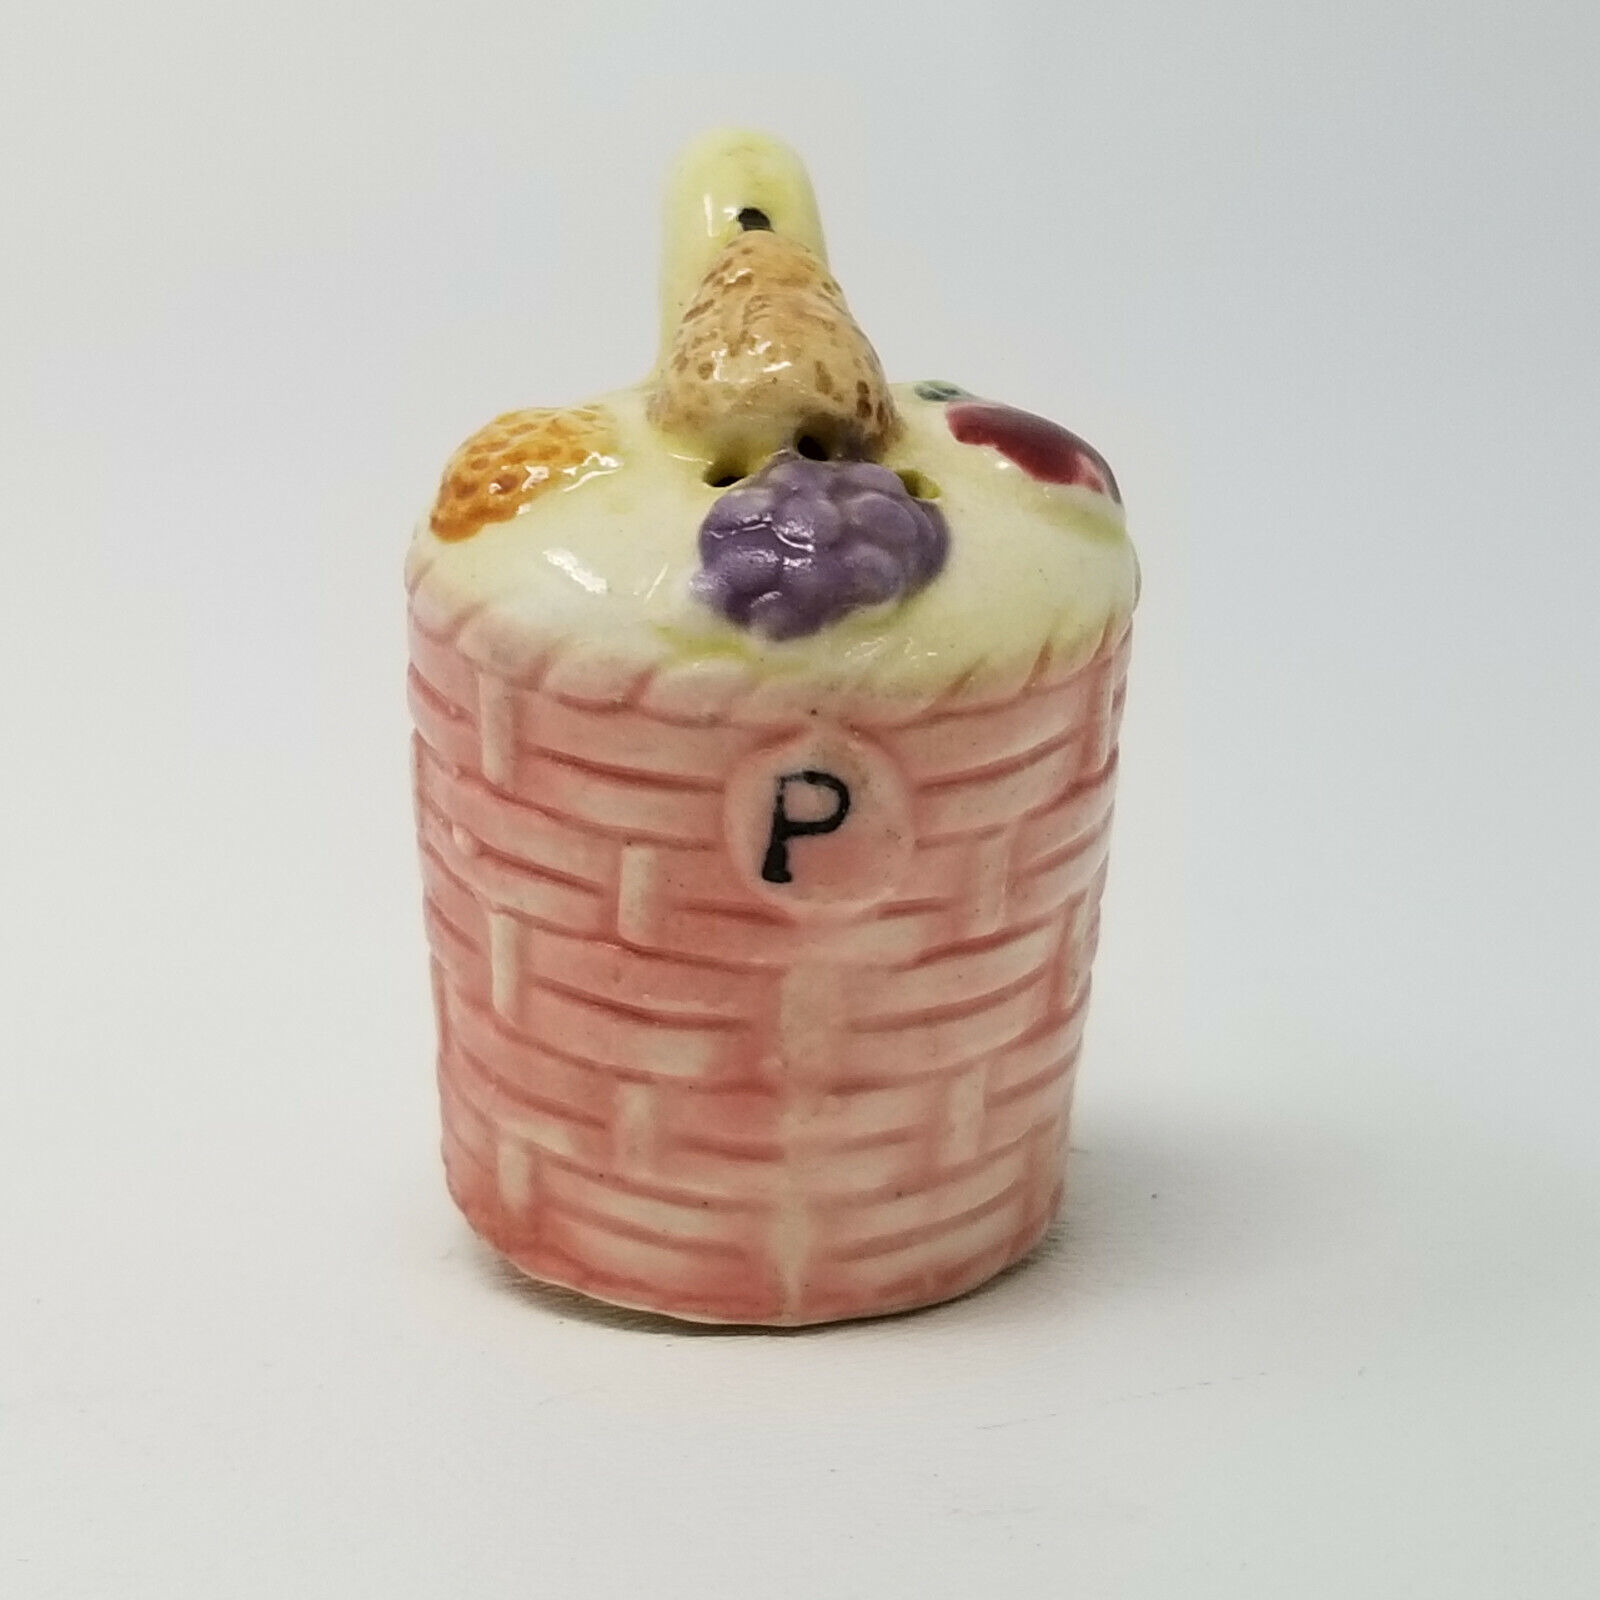 Primary image for Hanging Fruit Basket Figurine Single Salt Pepper Shaker Vintage Japanese Ceramic